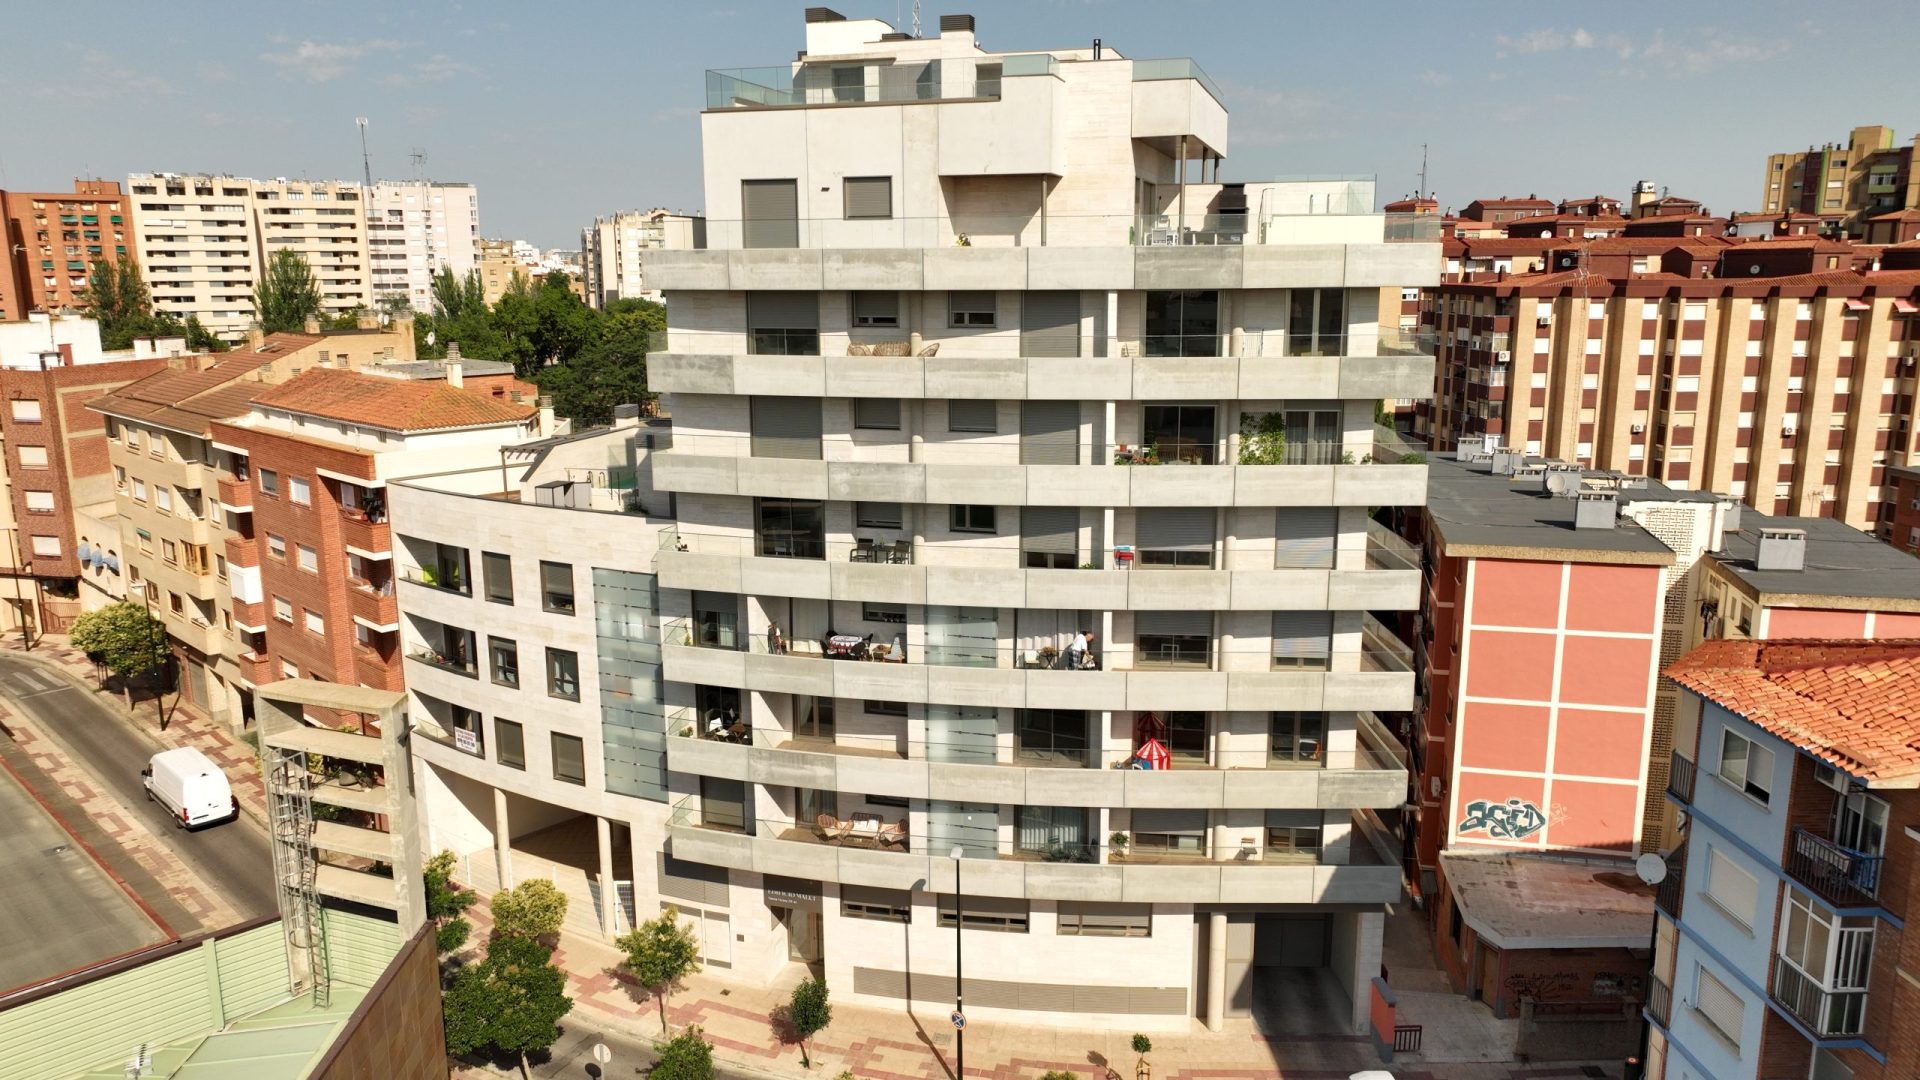 FINALISTA Mejor Proyecto de Actuación Residencial en Aragón: Edificio Malui en c/ Santa Gema, 39-41 de Zaragoza de Construcciones Alfonso Sánchez, S.A. (CAS)